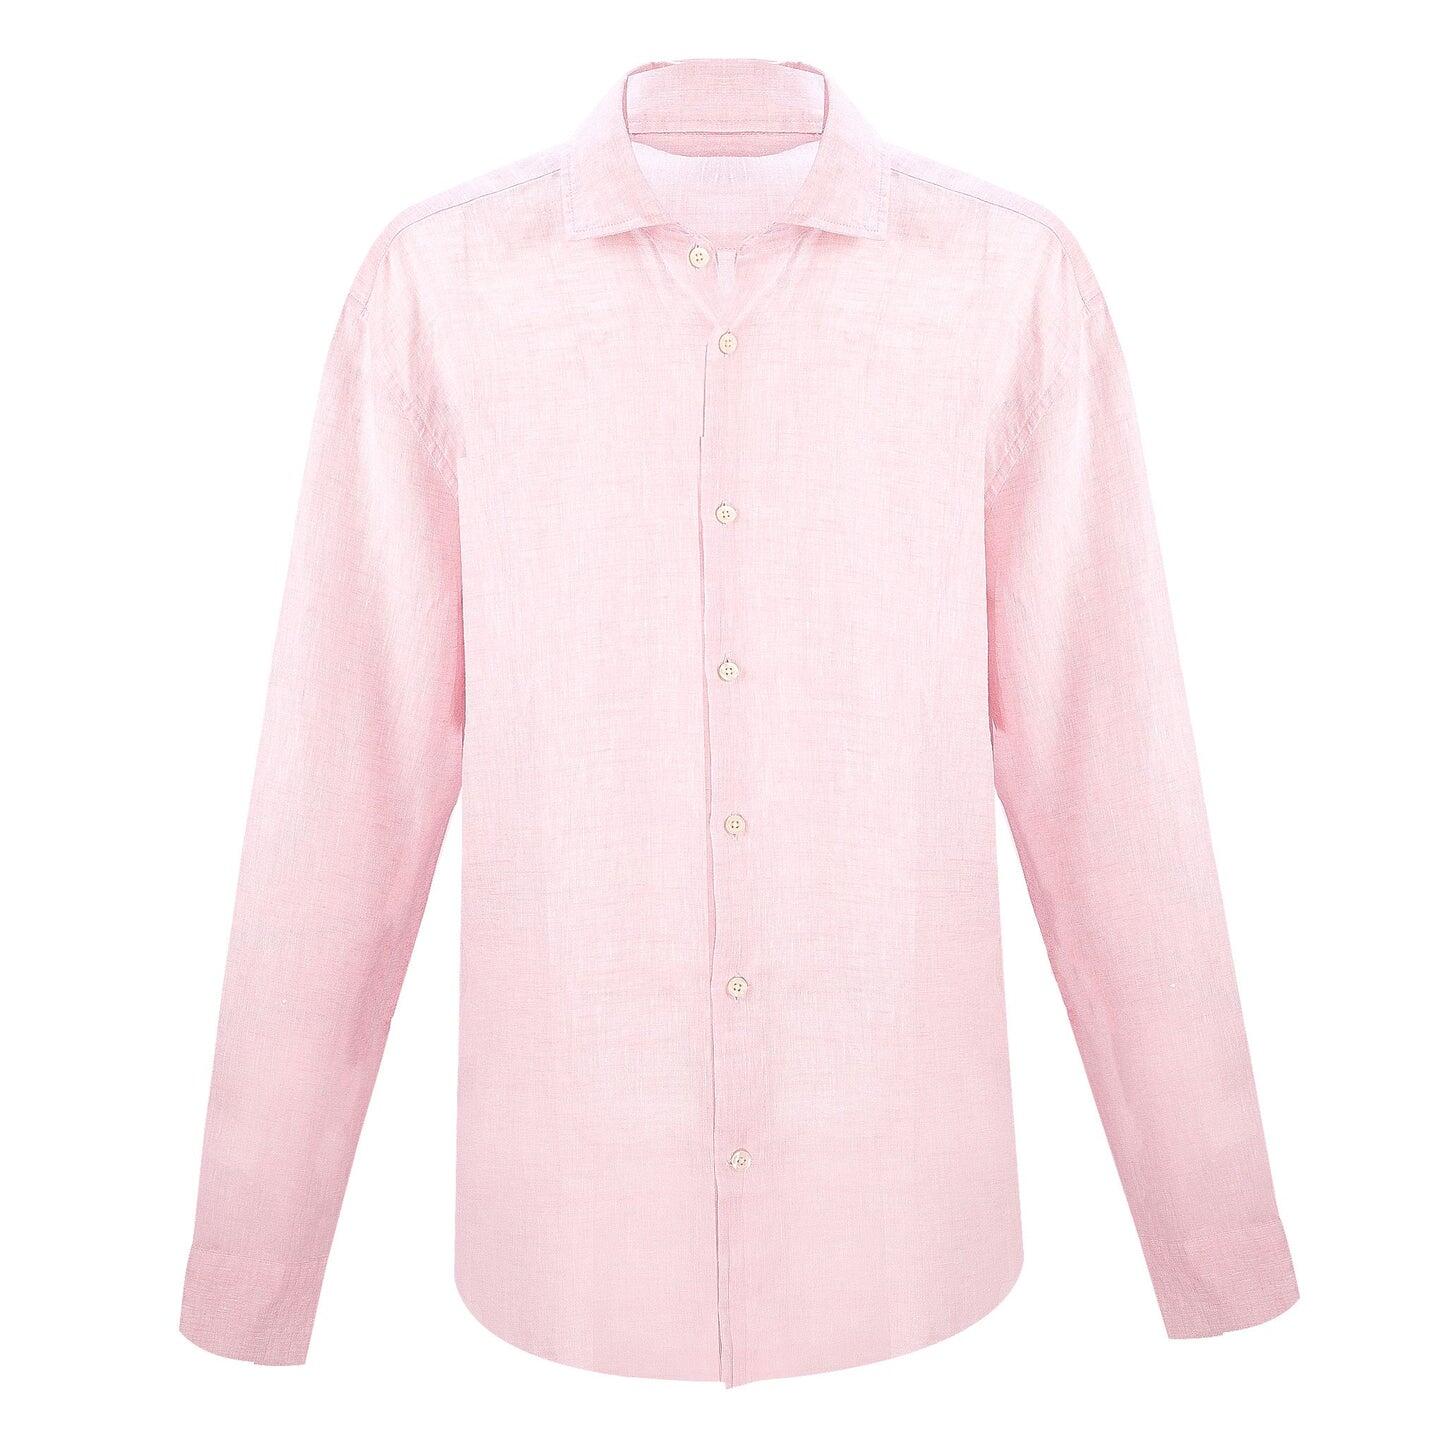 Mens Long Sleeve Linen Shirt in Light Pink